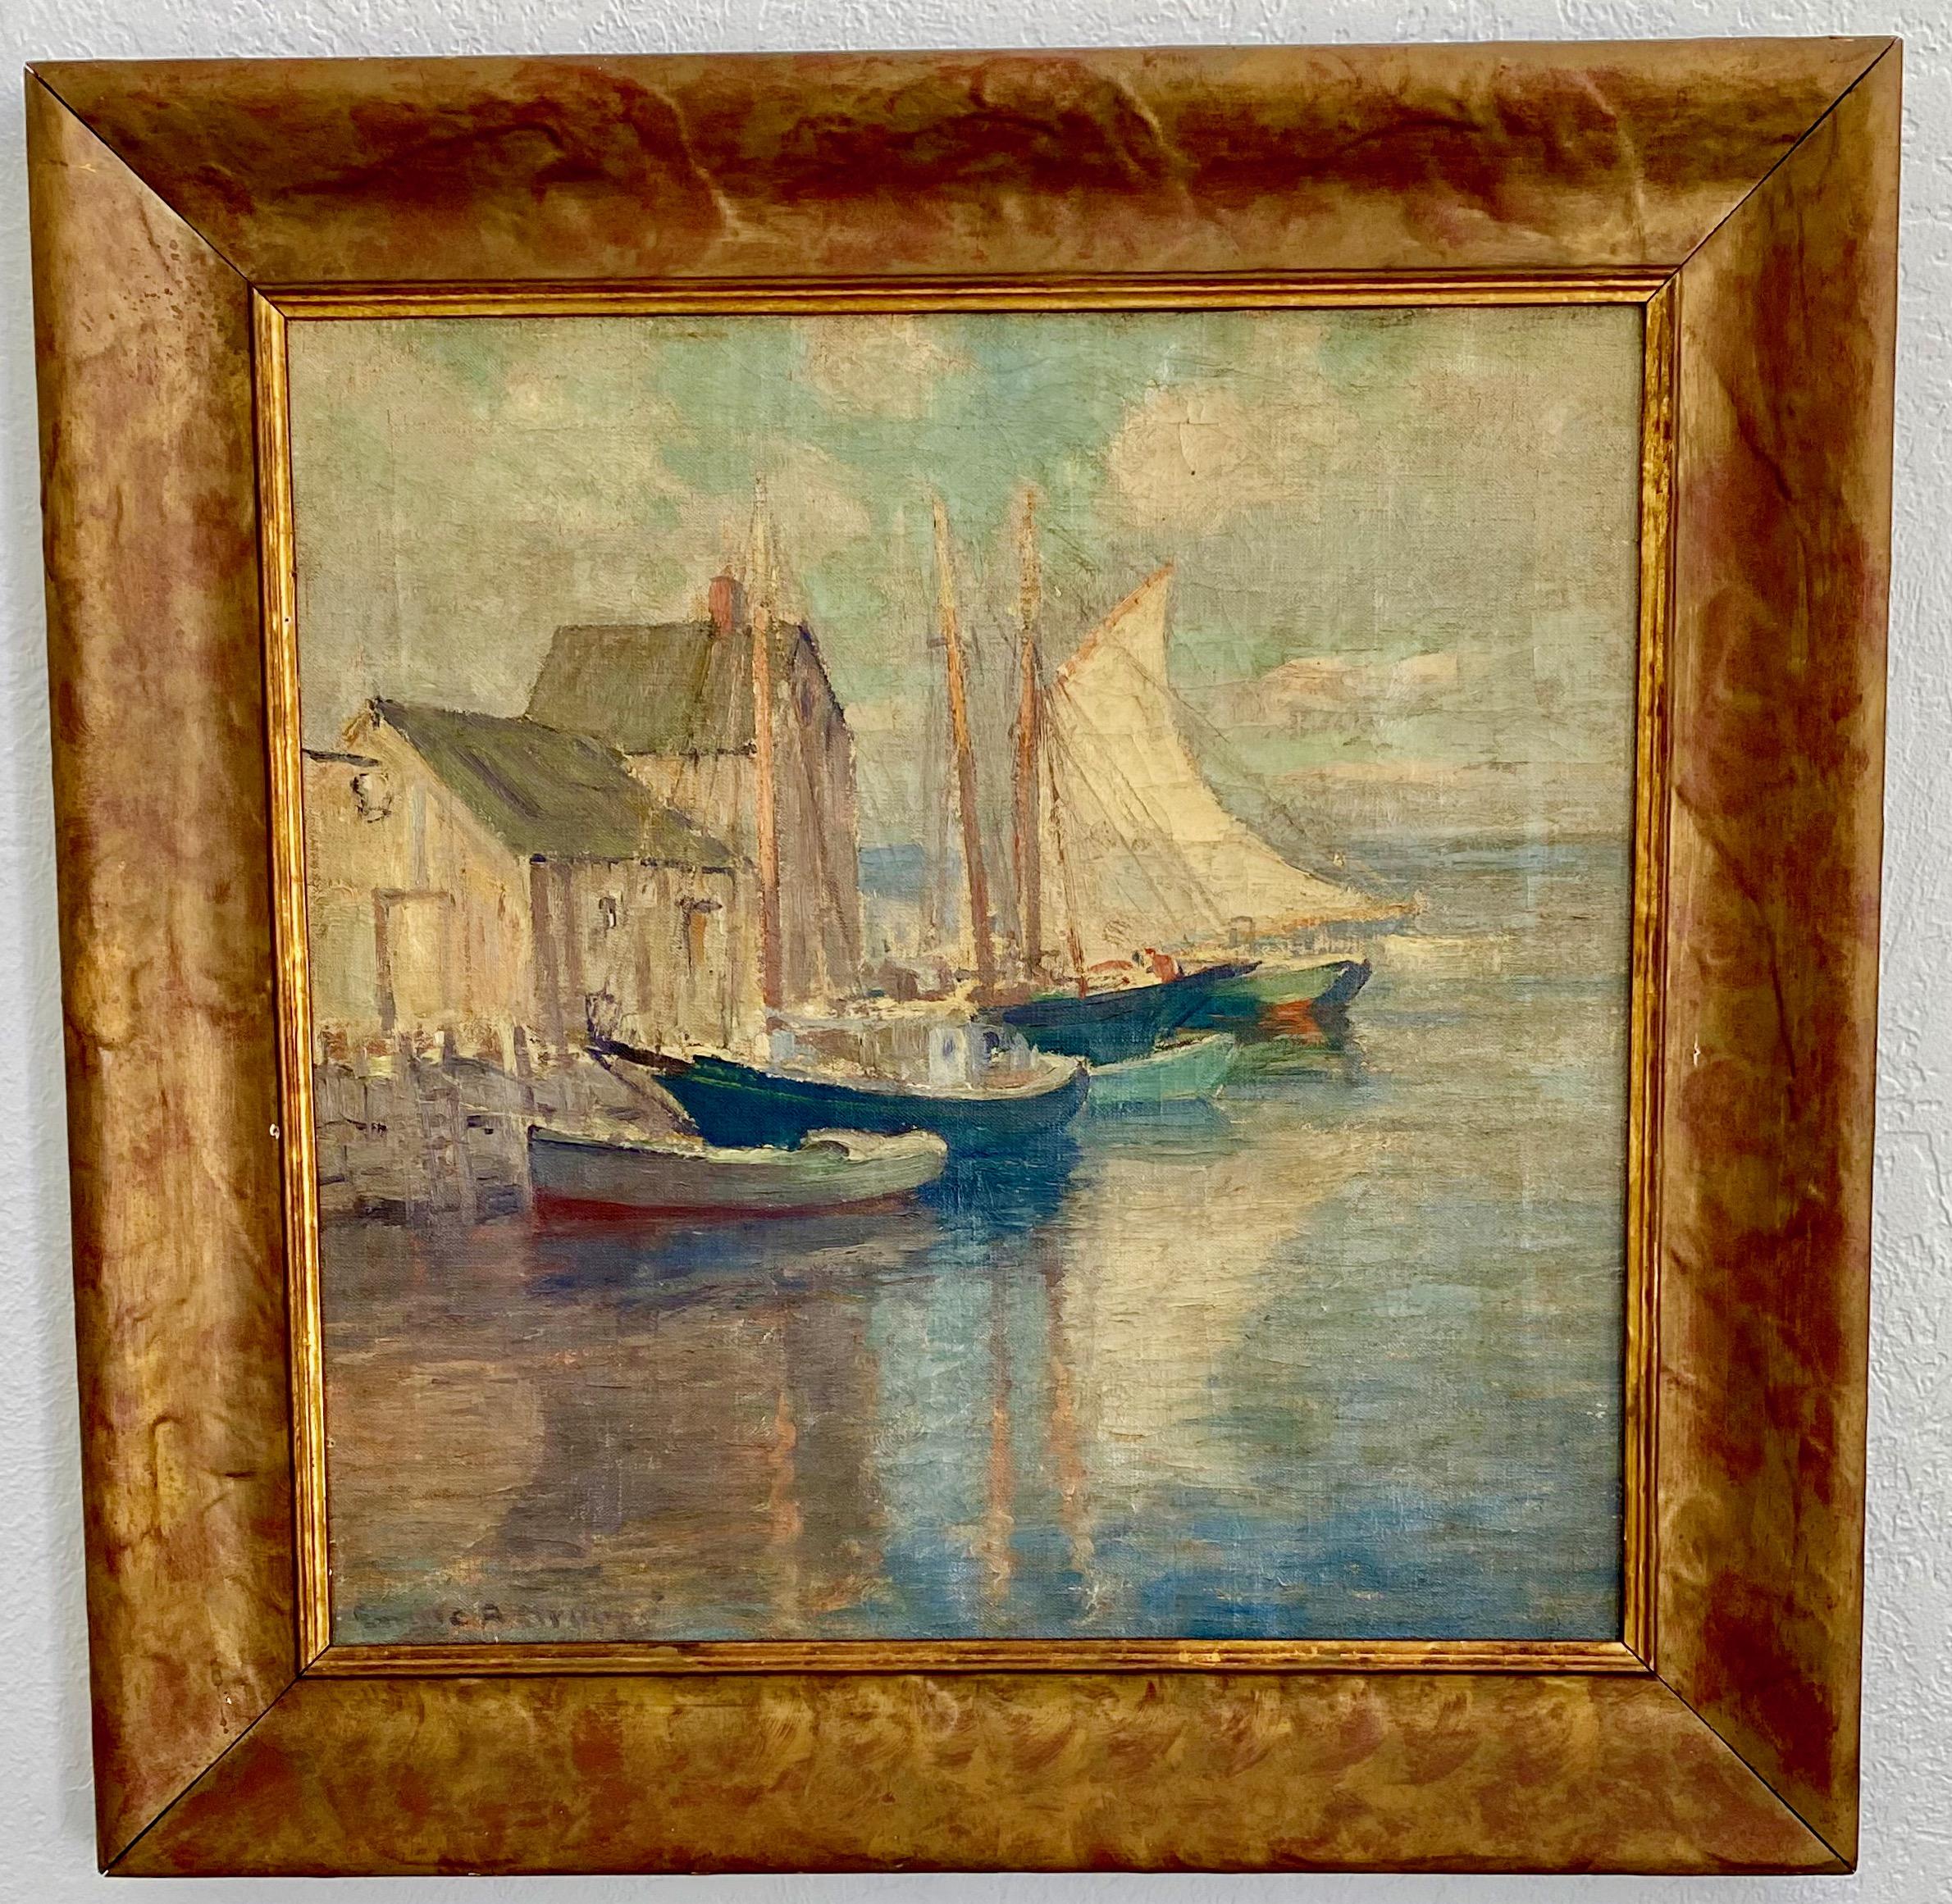 Hafenszene mit Segelbooten Seelandschaft
Signiert unten links, Leinwand 20x20, um 1930-40.
Emile Albert Gruppé wurde 1896 in Rochester, New York, geboren. Die ersten Jahre seines Lebens verbrachte er in den Niederlanden, da sein Vater, Charles P.